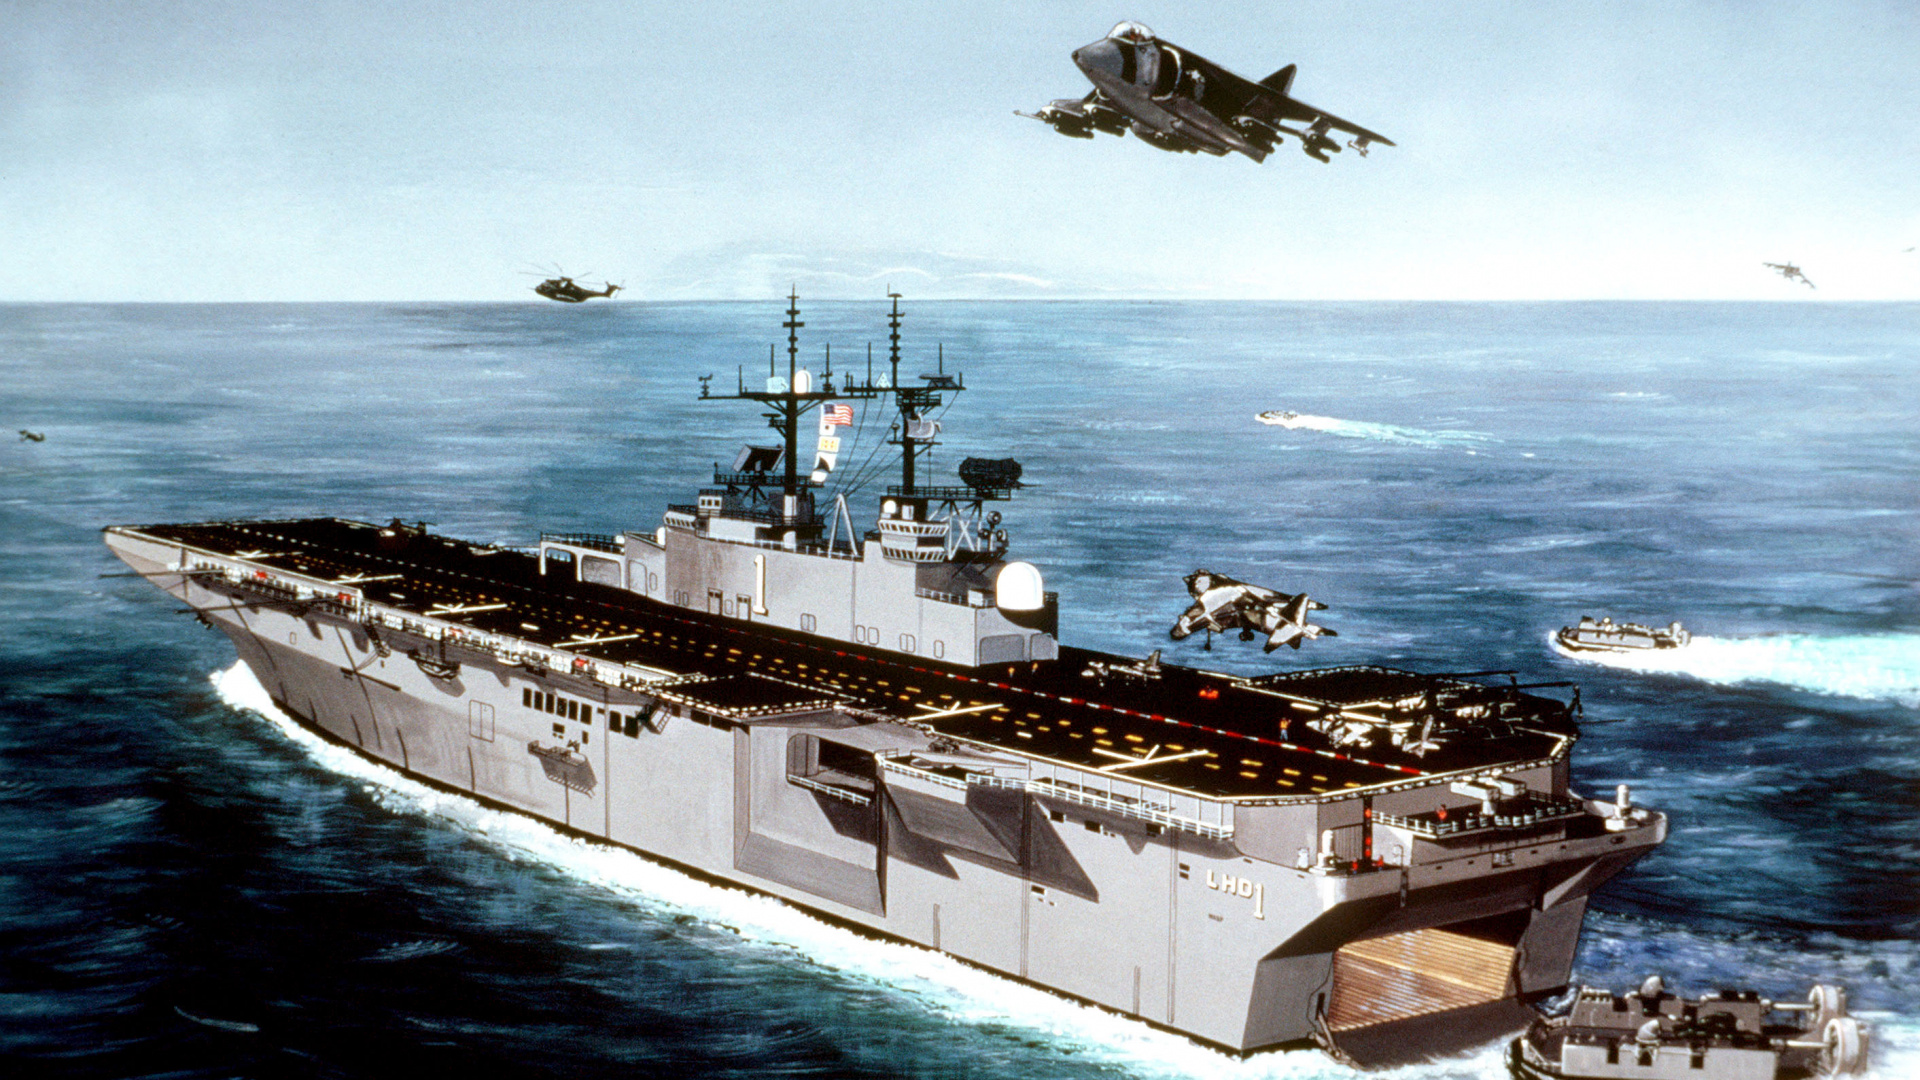 两栖攻击舰, 航空母舰, 海军的船, 军舰, 船只 壁纸 1920x1080 允许